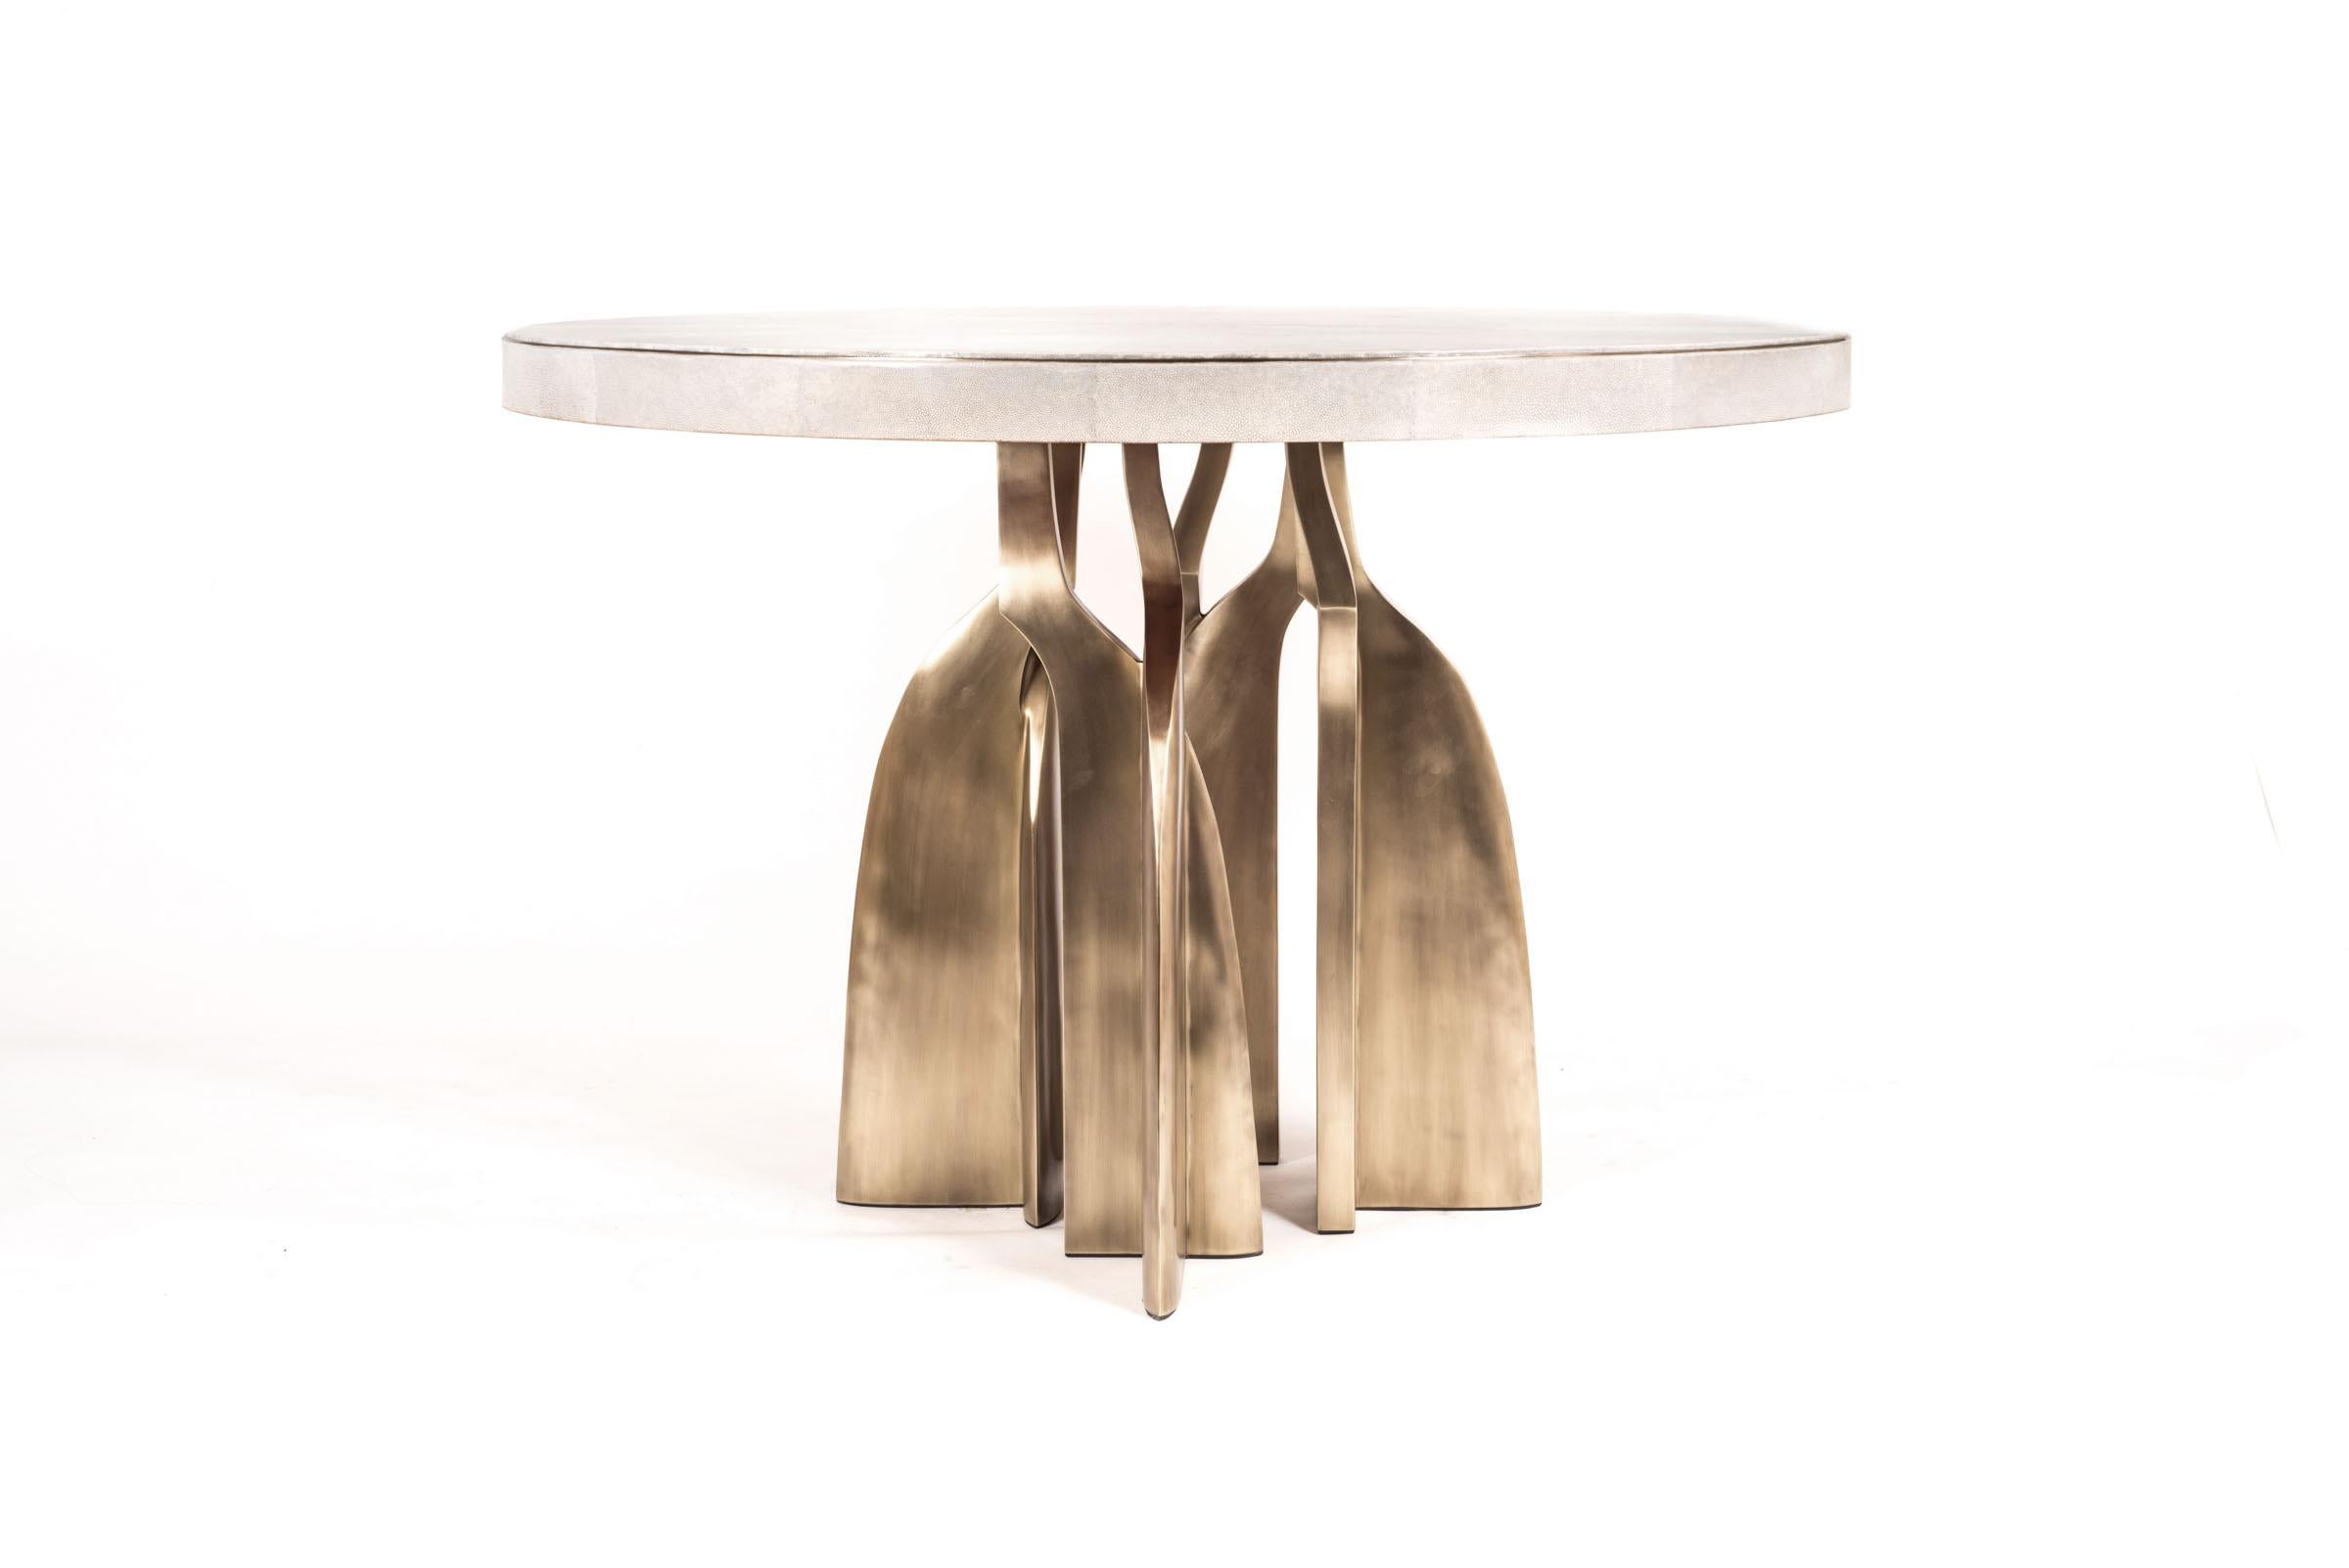 La table de petit-déjeuner Chital est une pièce étonnante, qui s'impose dans n'importe quel espace. Le plateau incrusté de galuchat crème présente un insert métallique subtil autour du cadre, suivi de pieds sculpturaux en laiton bronze-patiné